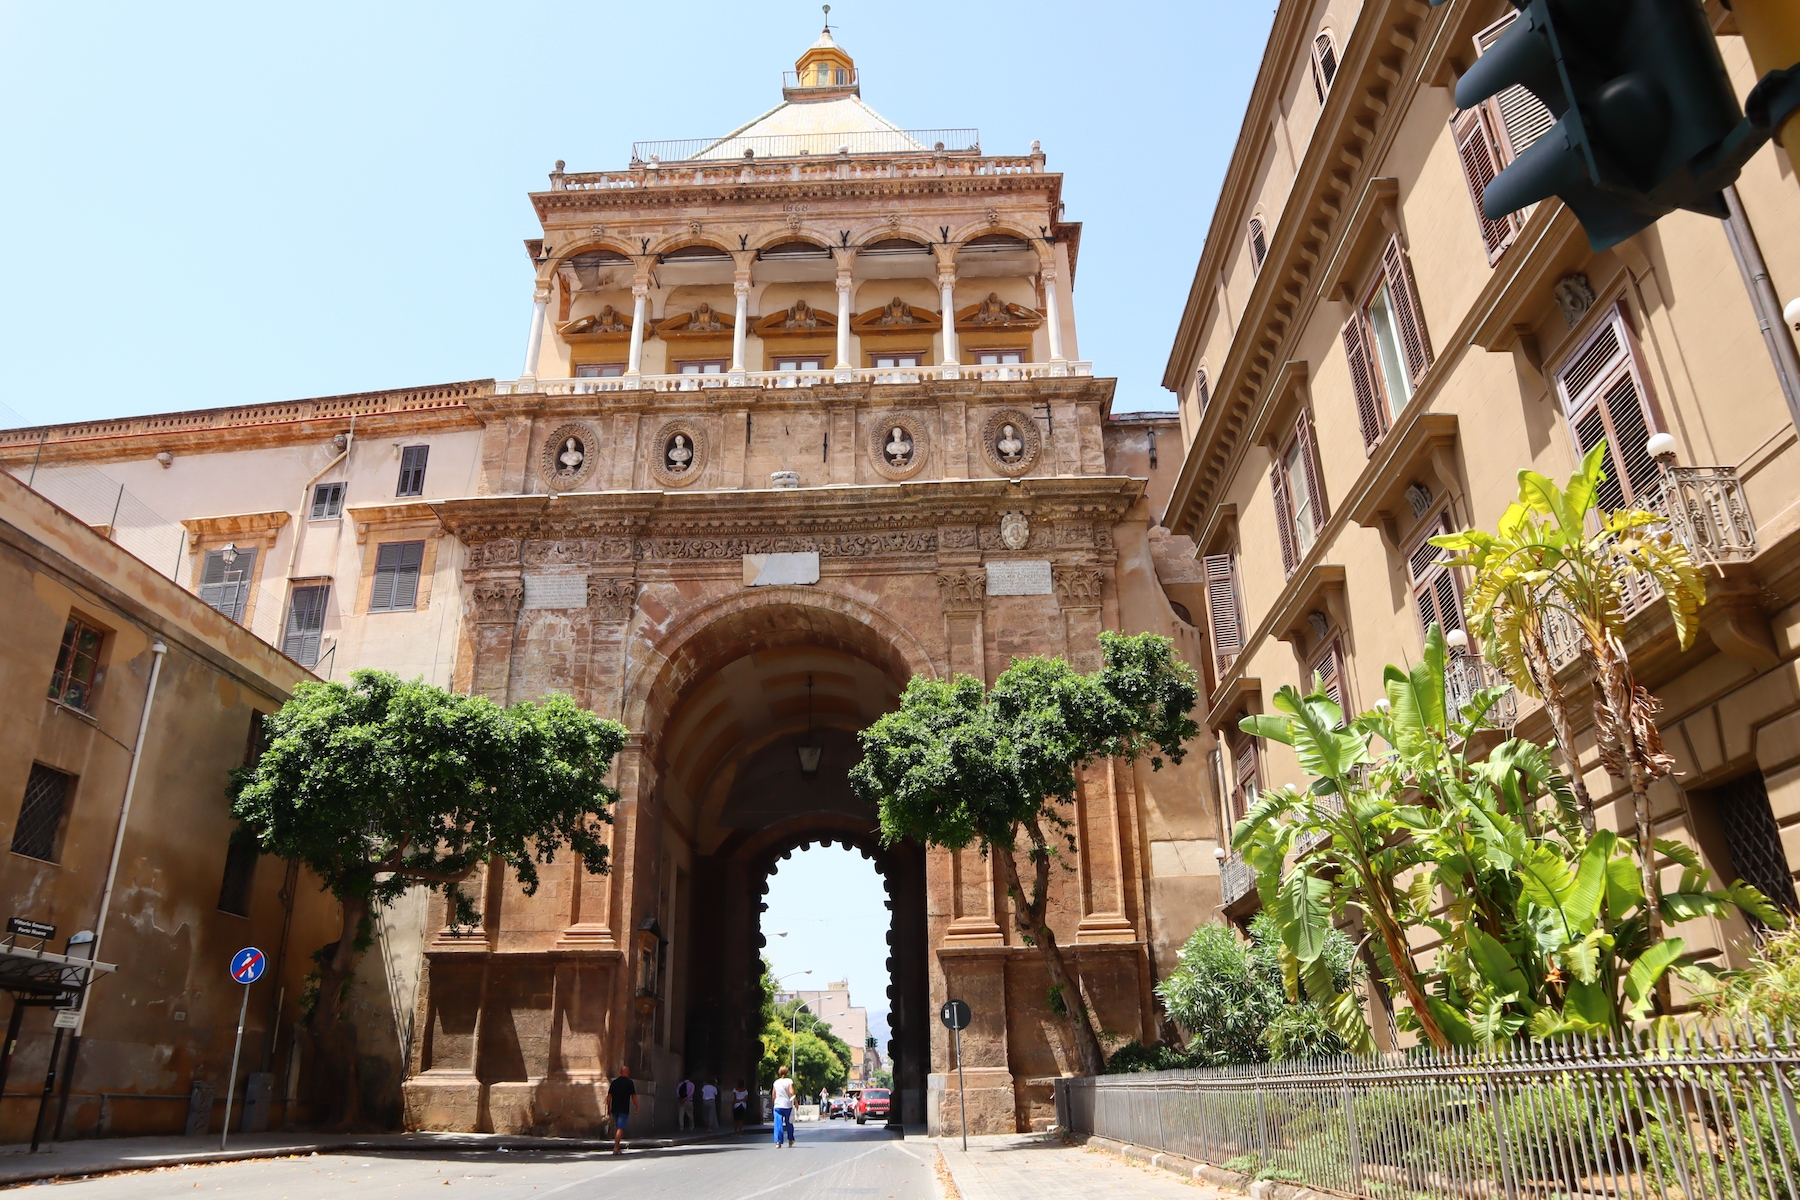 Porta Nuova được xây dựng để kỷ niệm cuộc chinh phục Tunis của Thánh Chế La Mã Charles V và chuyến đi ngay sau đó của ông tới Palermo, và vẫn trụ vững đến ngày nay như một cổng thành đồ sộ. (Ảnh: Walter Cicchetti/Shutterstock)